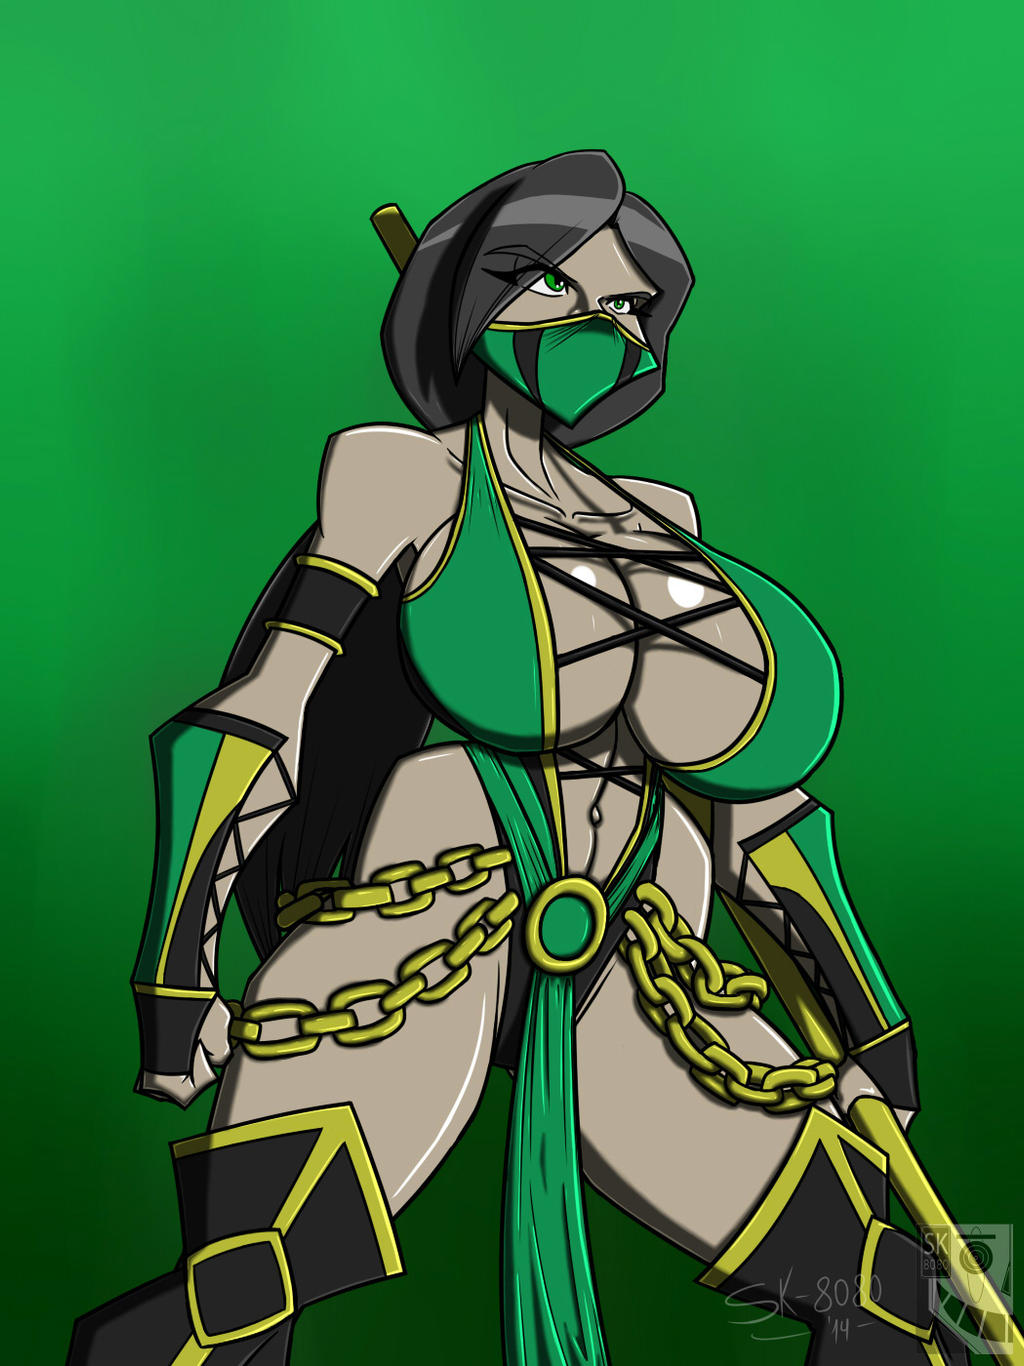 Mortal kombat big boobs Jade By Sk 8080 On Deviantart